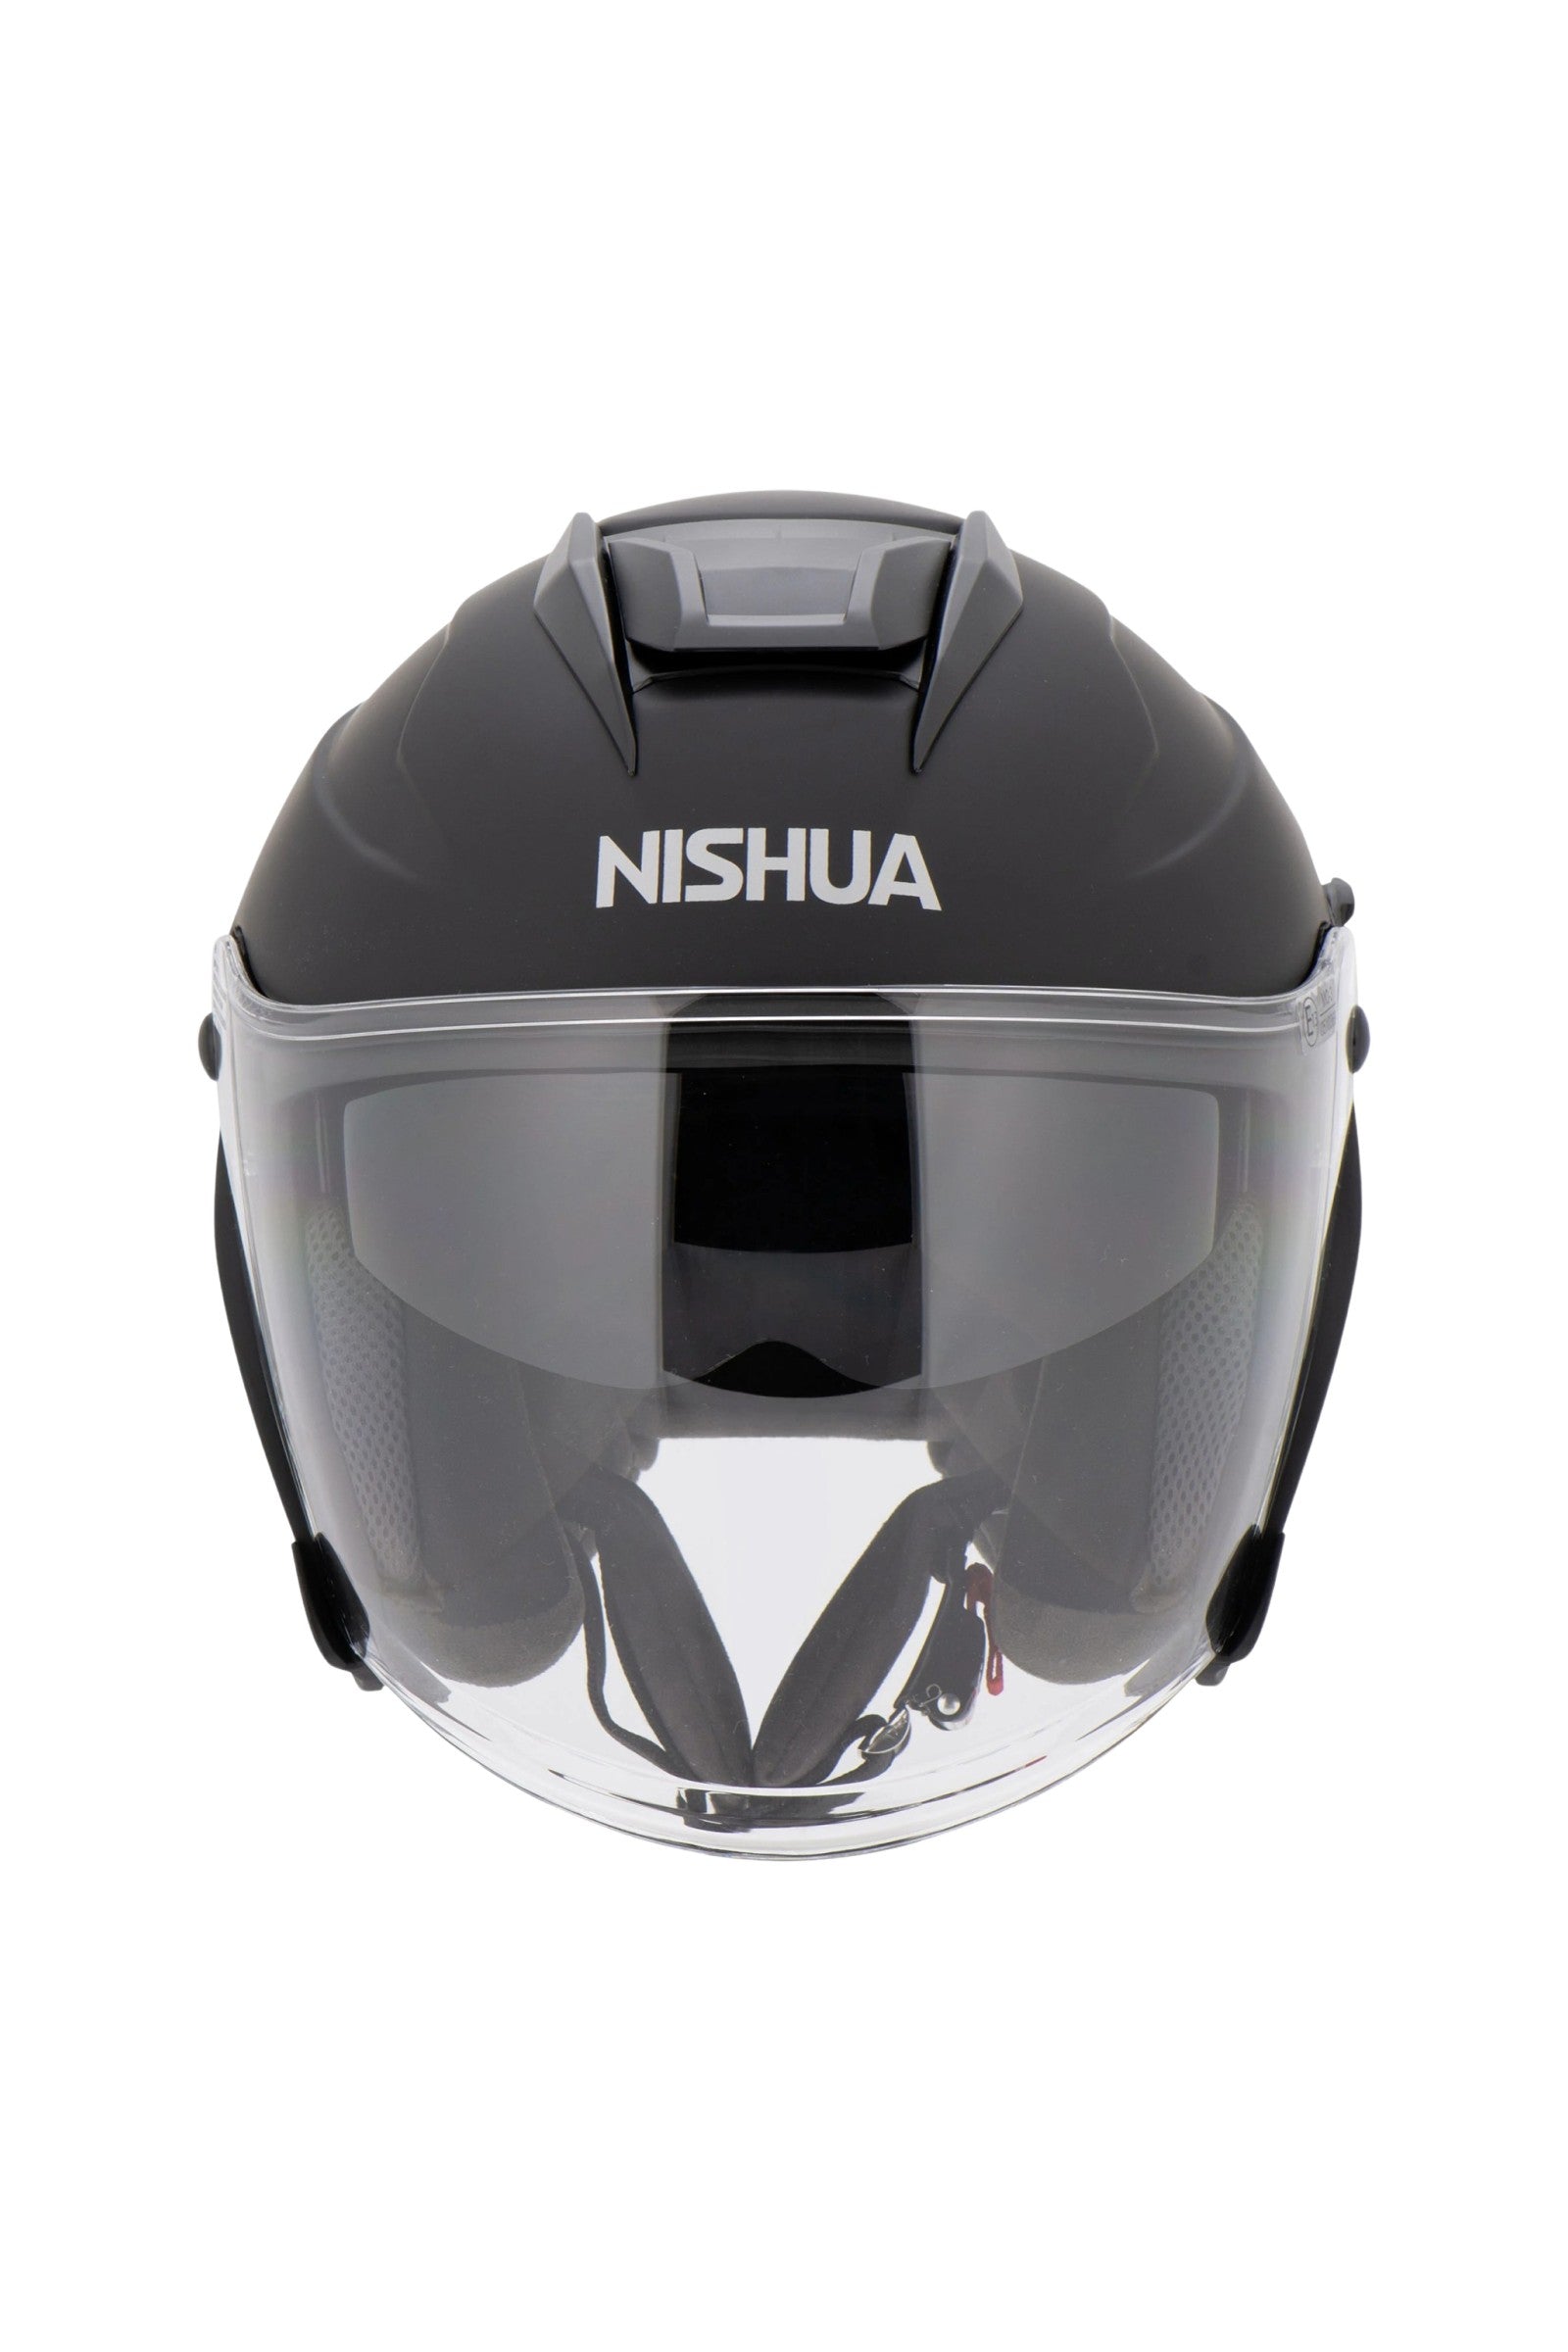 Nishua NDX-1 Eco Jethelm 